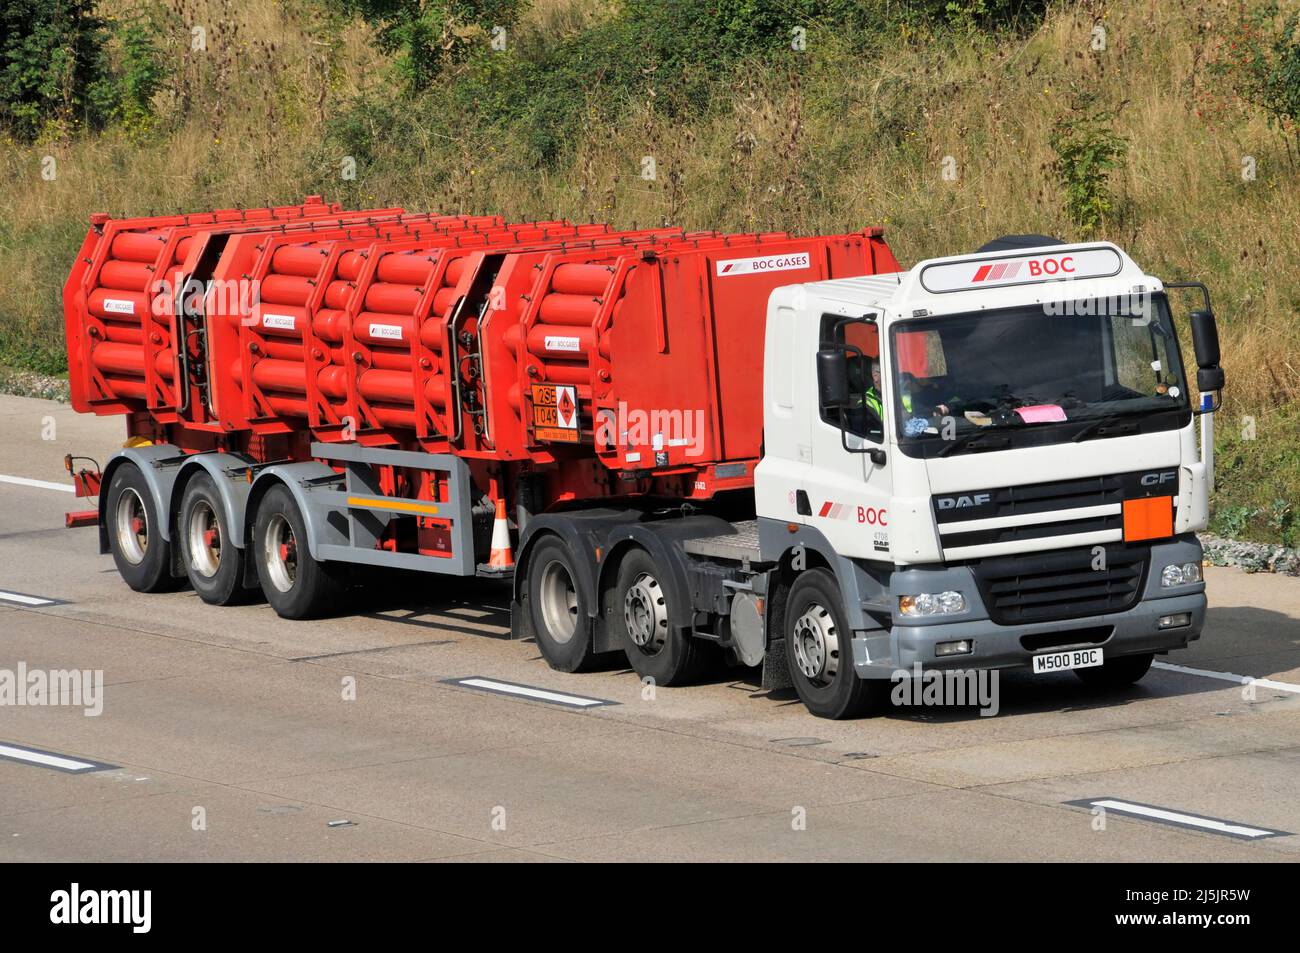 Vista lateral delantera Una empresa de gas BOC, camión DAF hgv y conductor con remolque articulado de cilindros rojos que contienen gases BOC que conducen por la autopista del Reino Unido Foto de stock